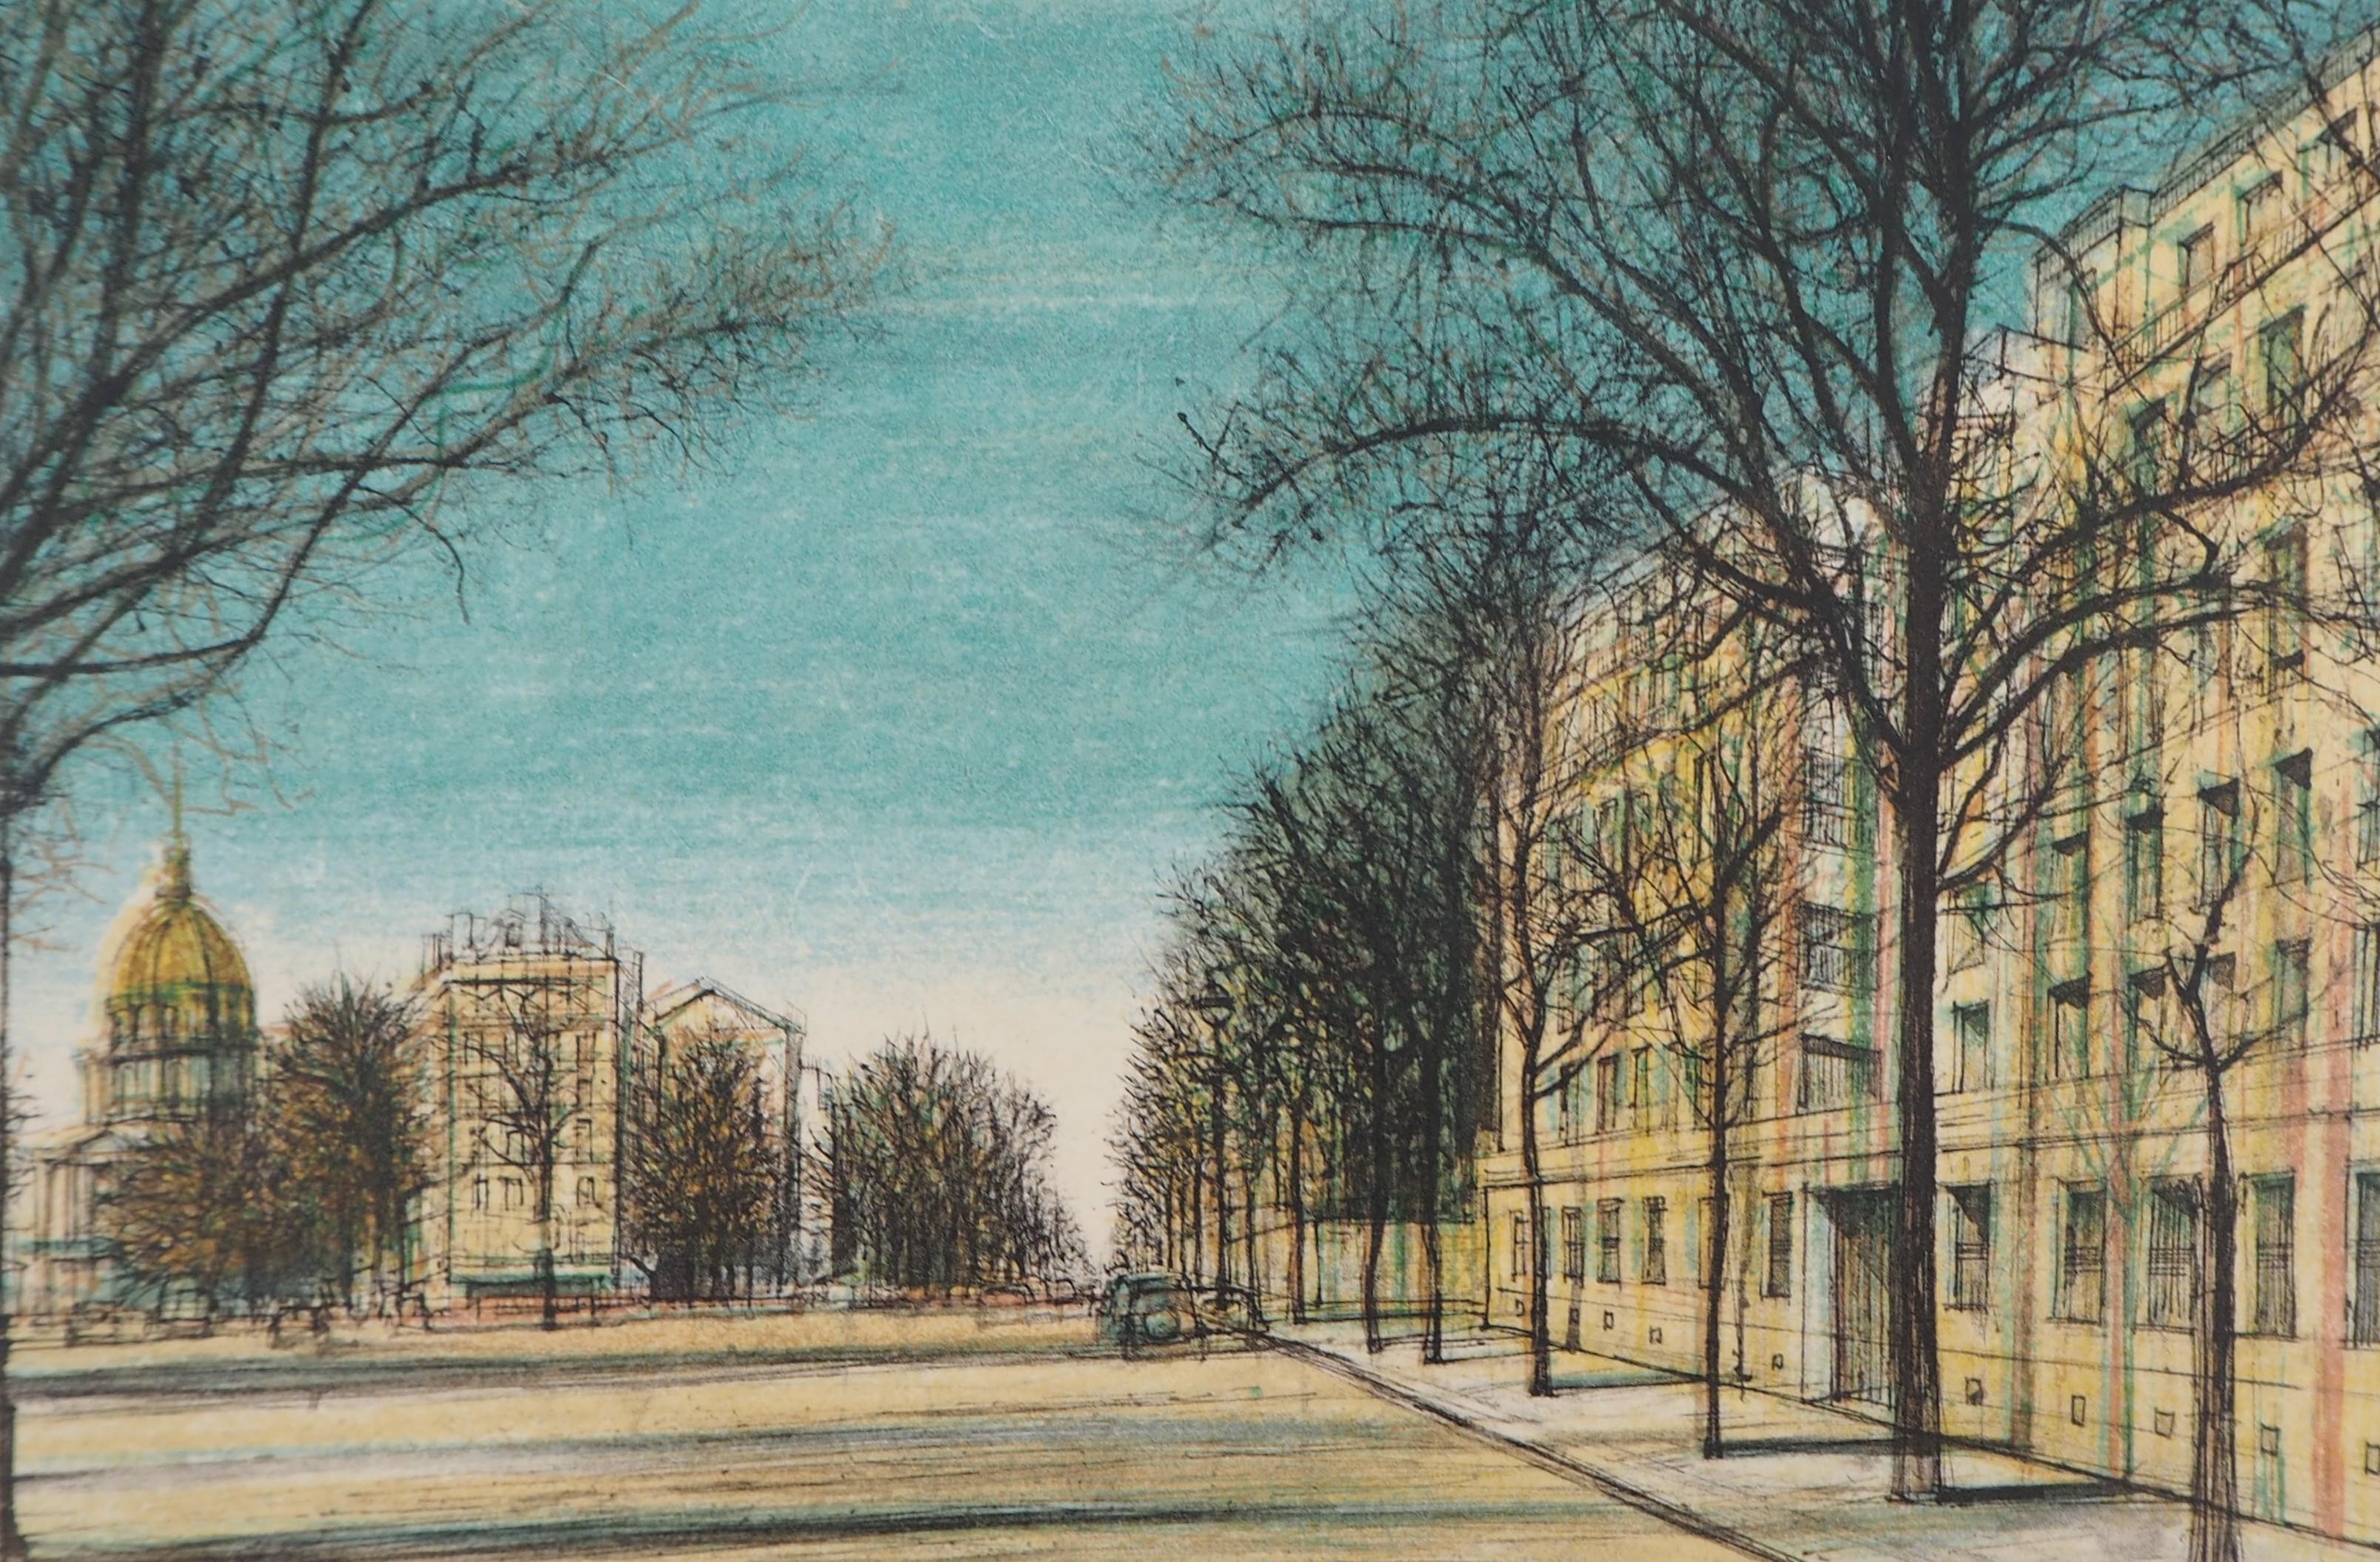 Jean CARZOU
Paris: Boulevard des Invalide, 1958

Original-Lithographie in Farbe
Handsigniert mit Bleistift
1958 mit Bleistift datiert
Nummeriert / 100 Ex
Auf Japanpapier 29 x 40 cm (ca. 11,4 x 15,7 inch)

Ausgezeichneter Zustand